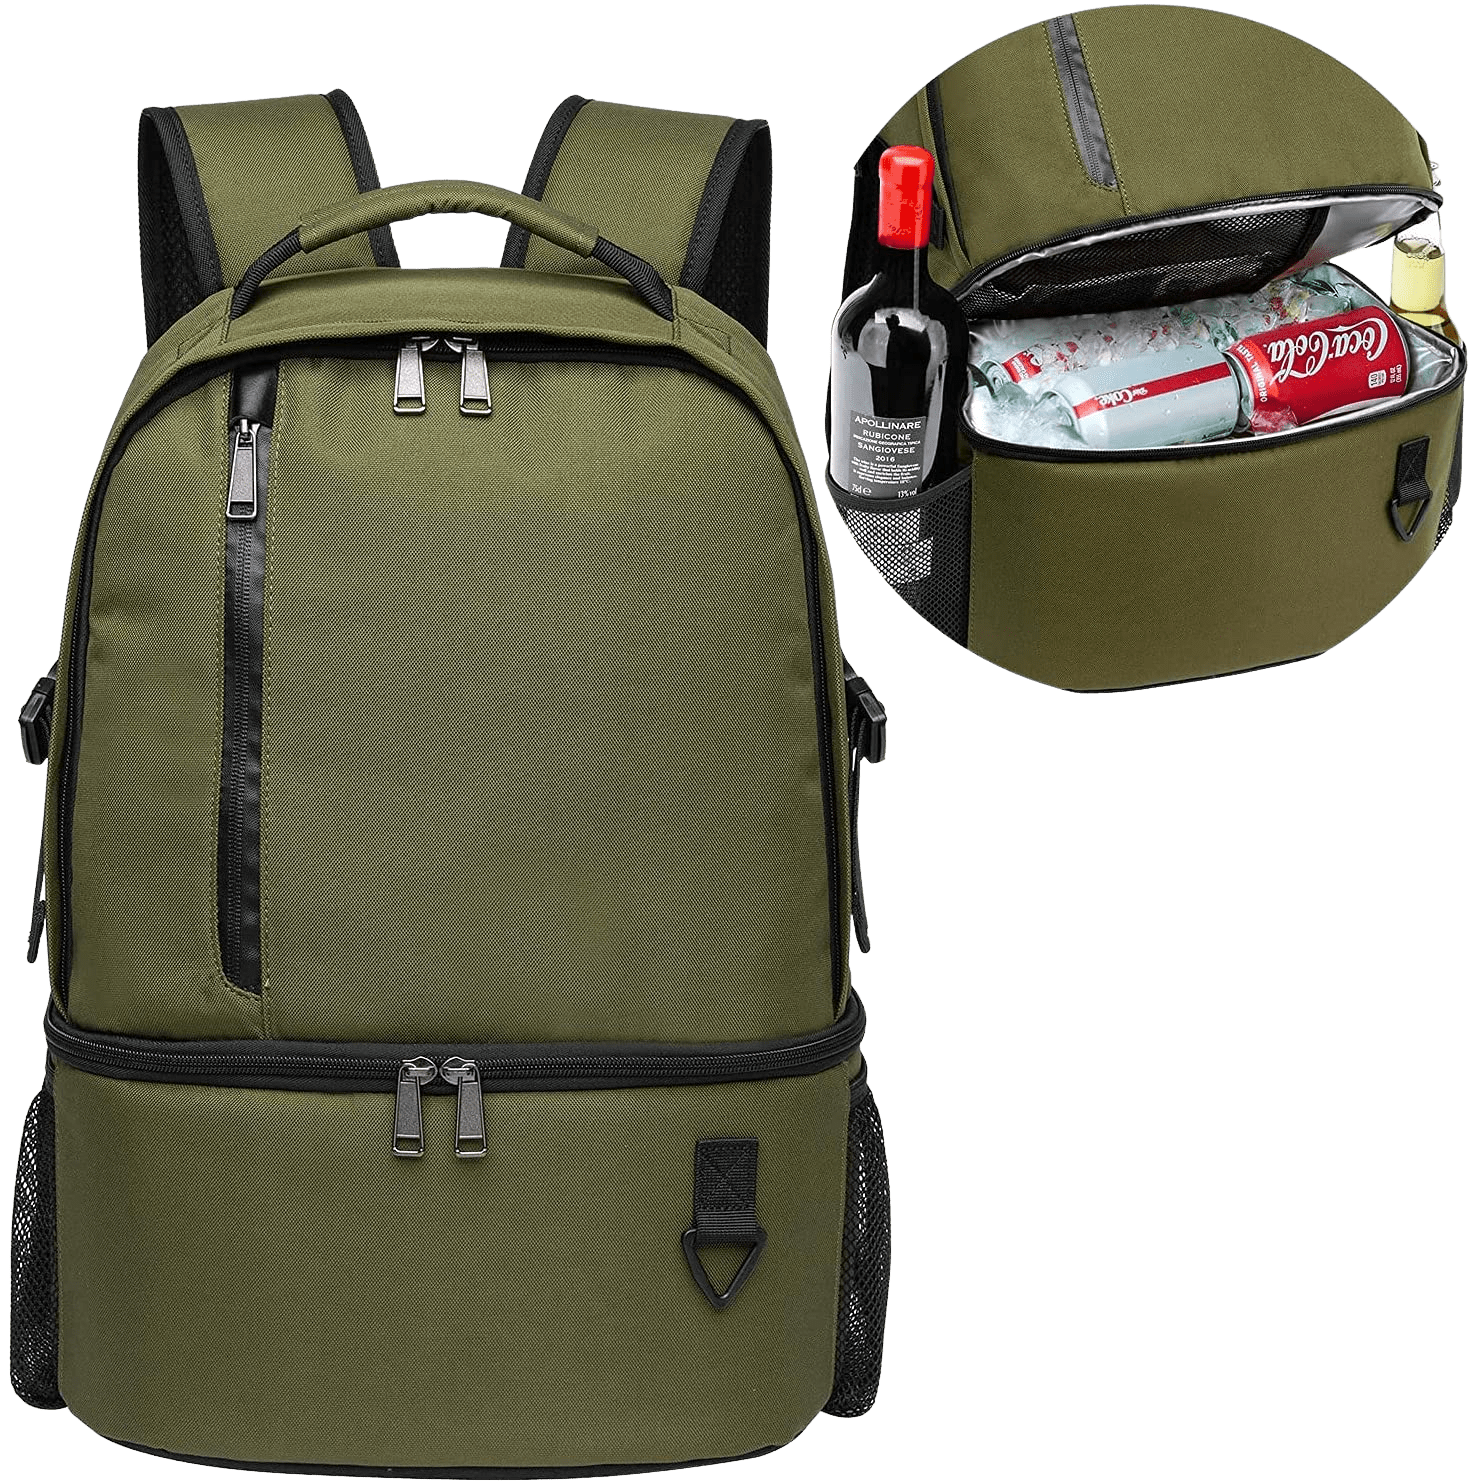 waterproof multifunction backpack